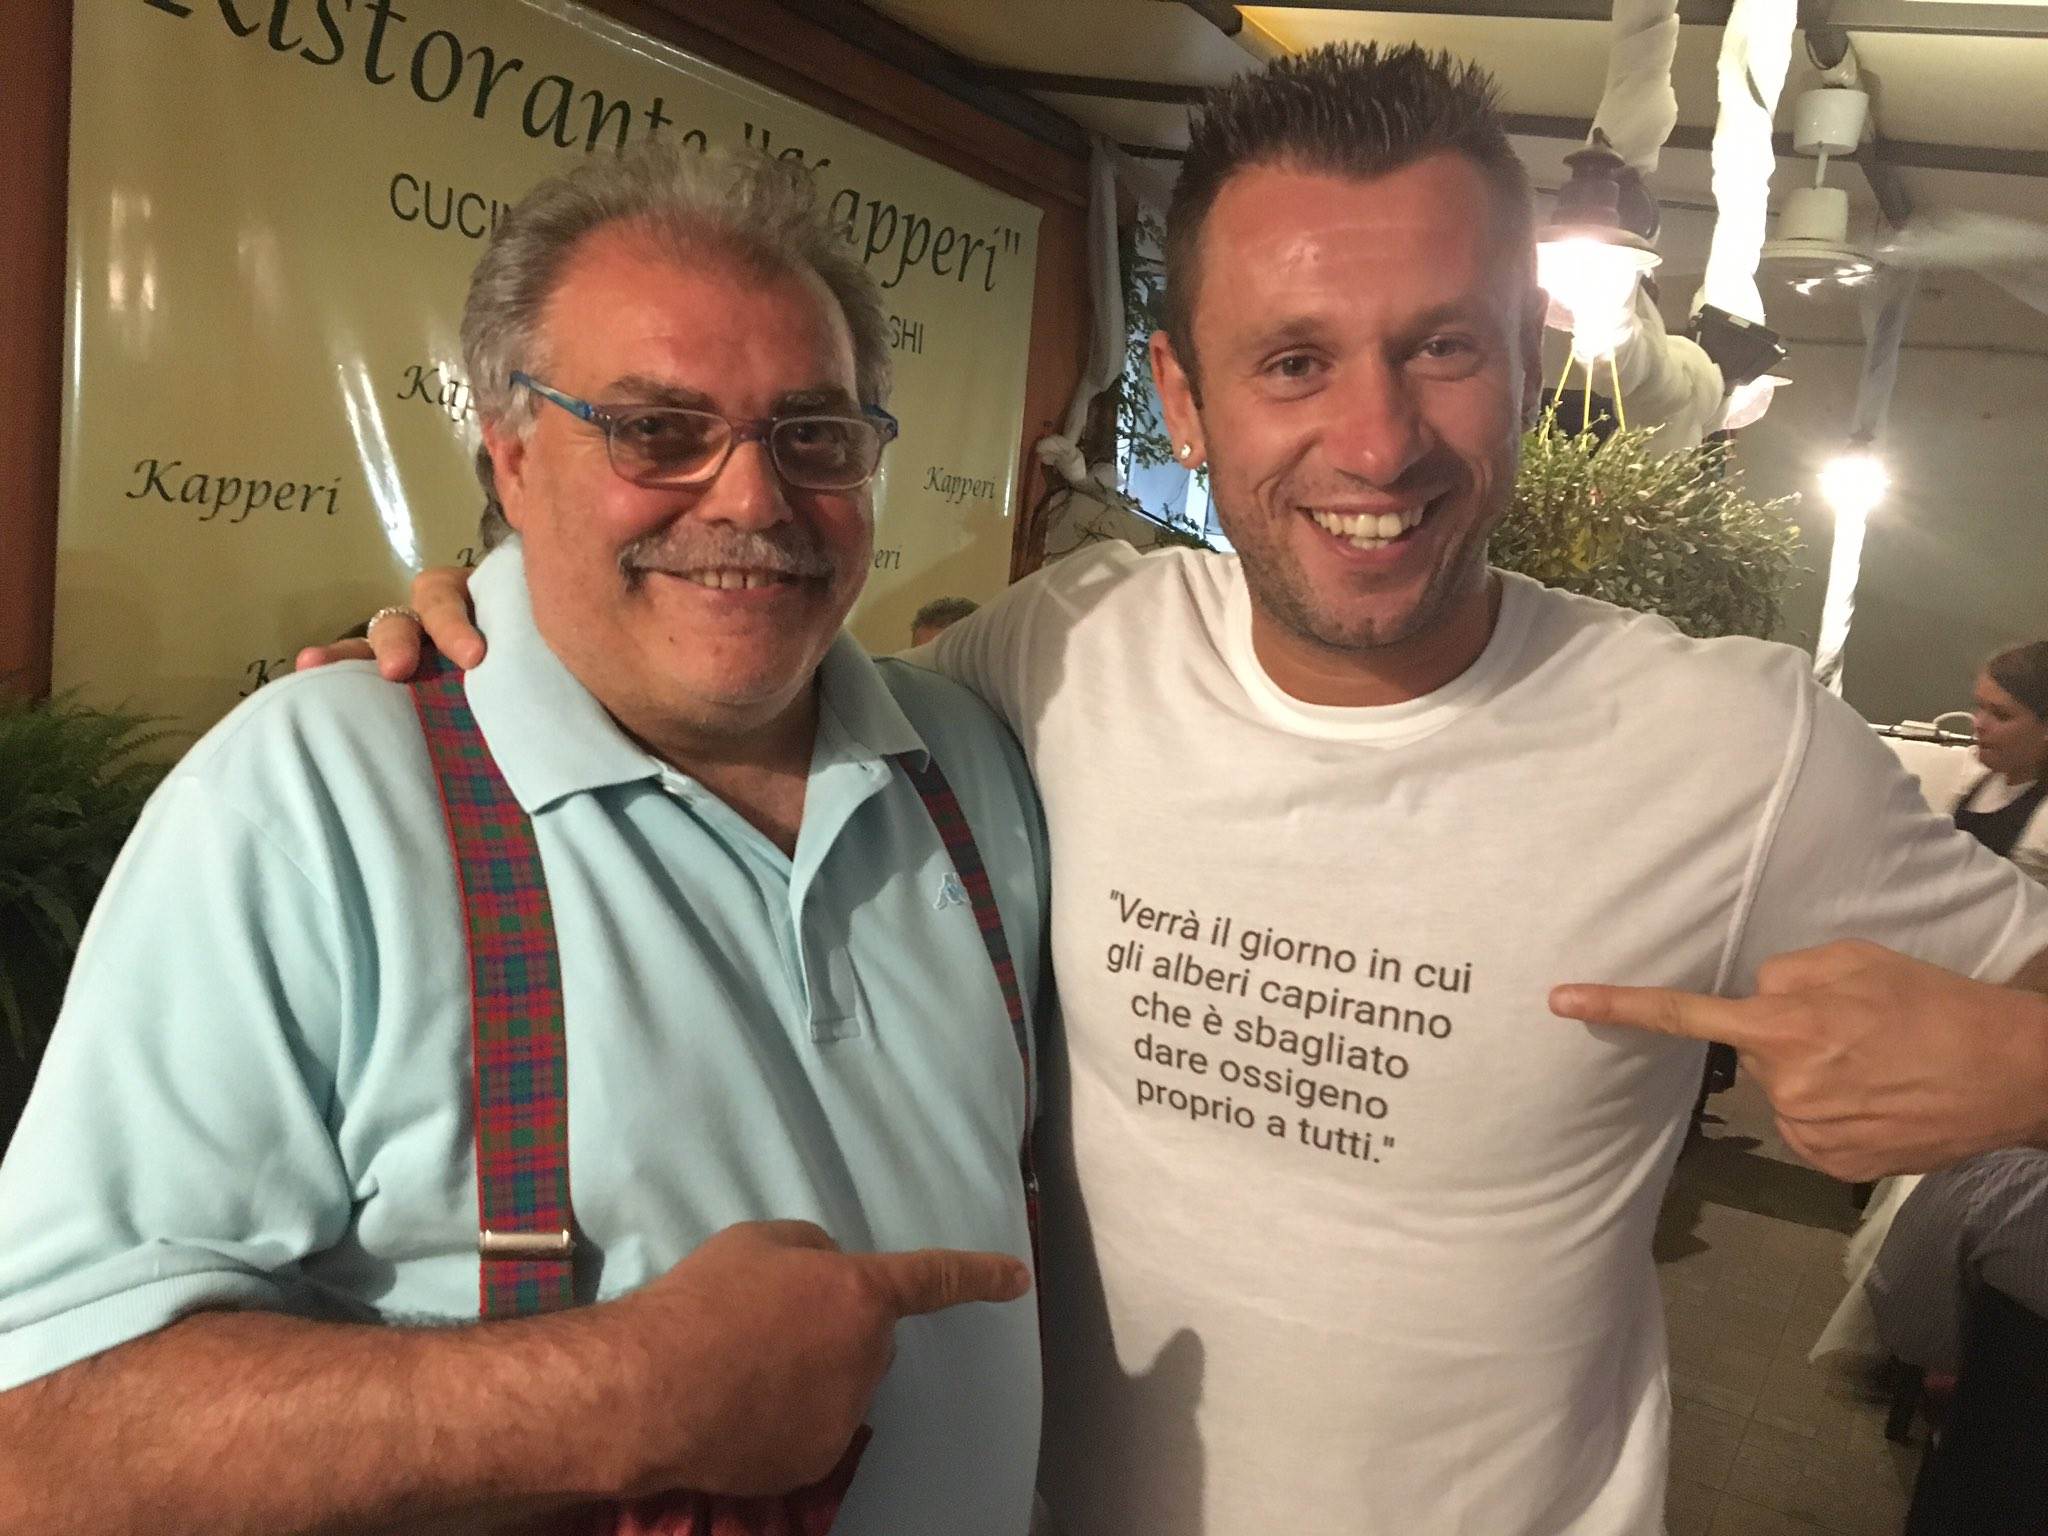 Antonio Cassano, con un amico, indossa una maglietta con un messaggio esplicito per i suoi detrattori